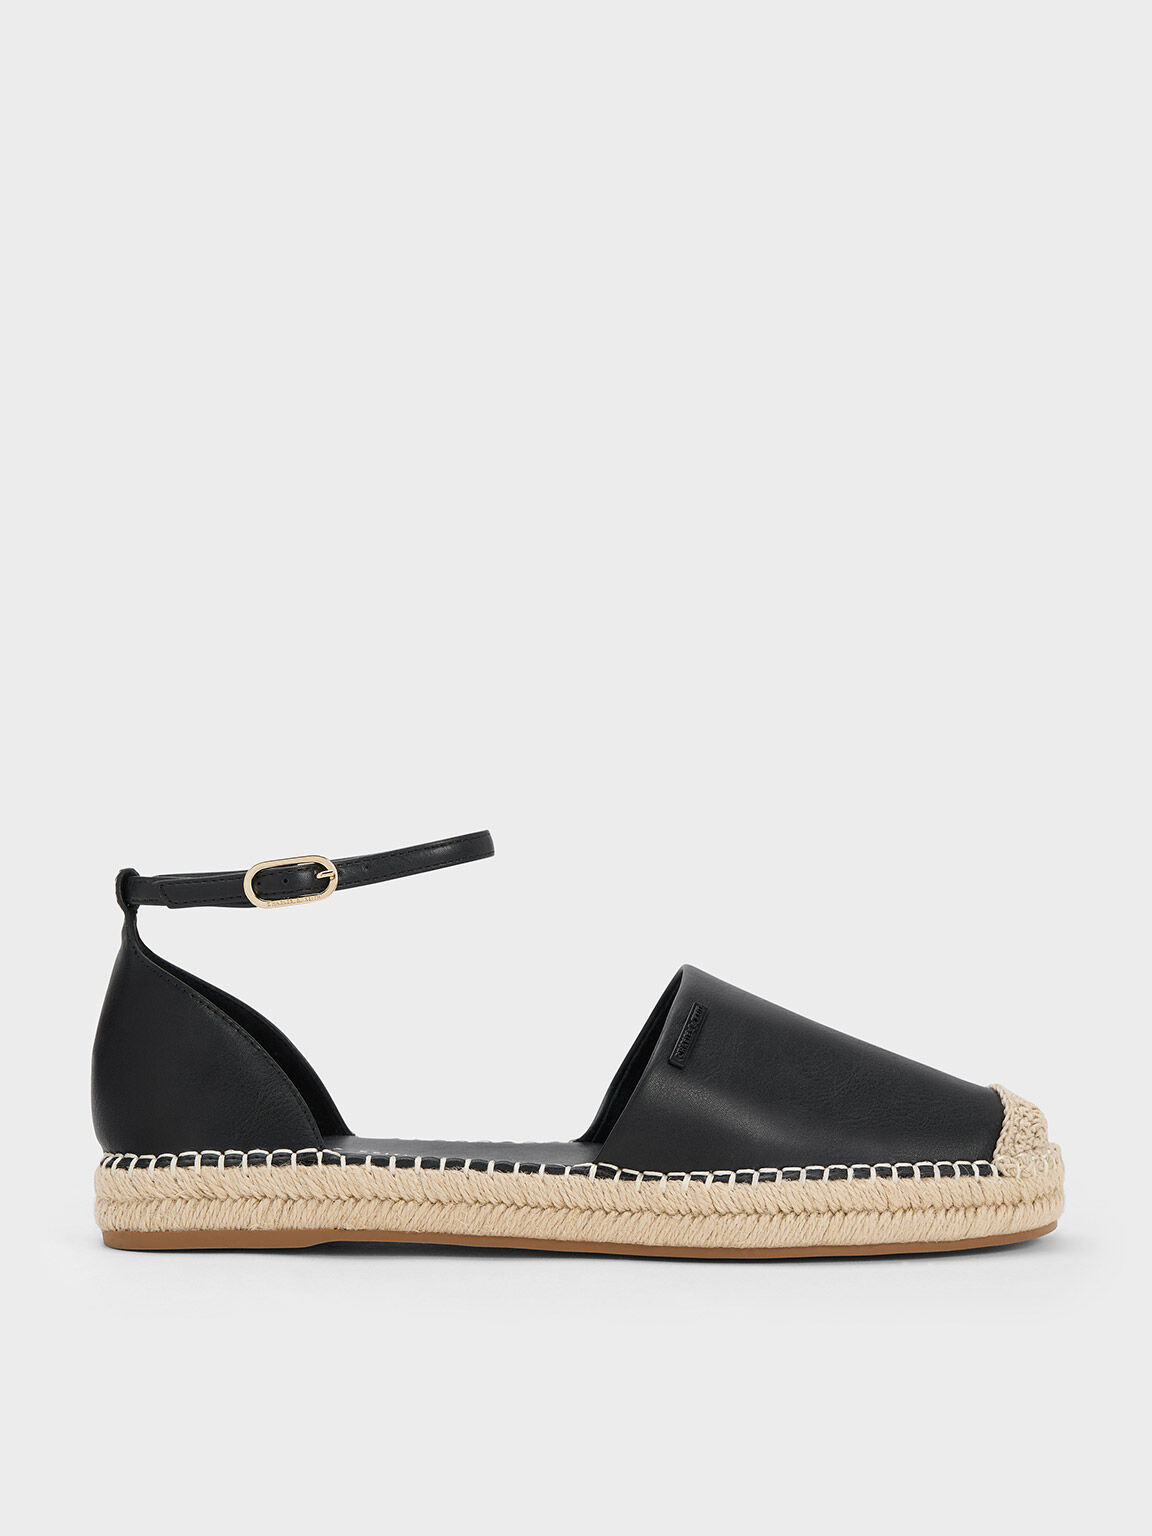 Black Sandal Flats Linen Ankle-Strap Espadrille, Black, hi-res